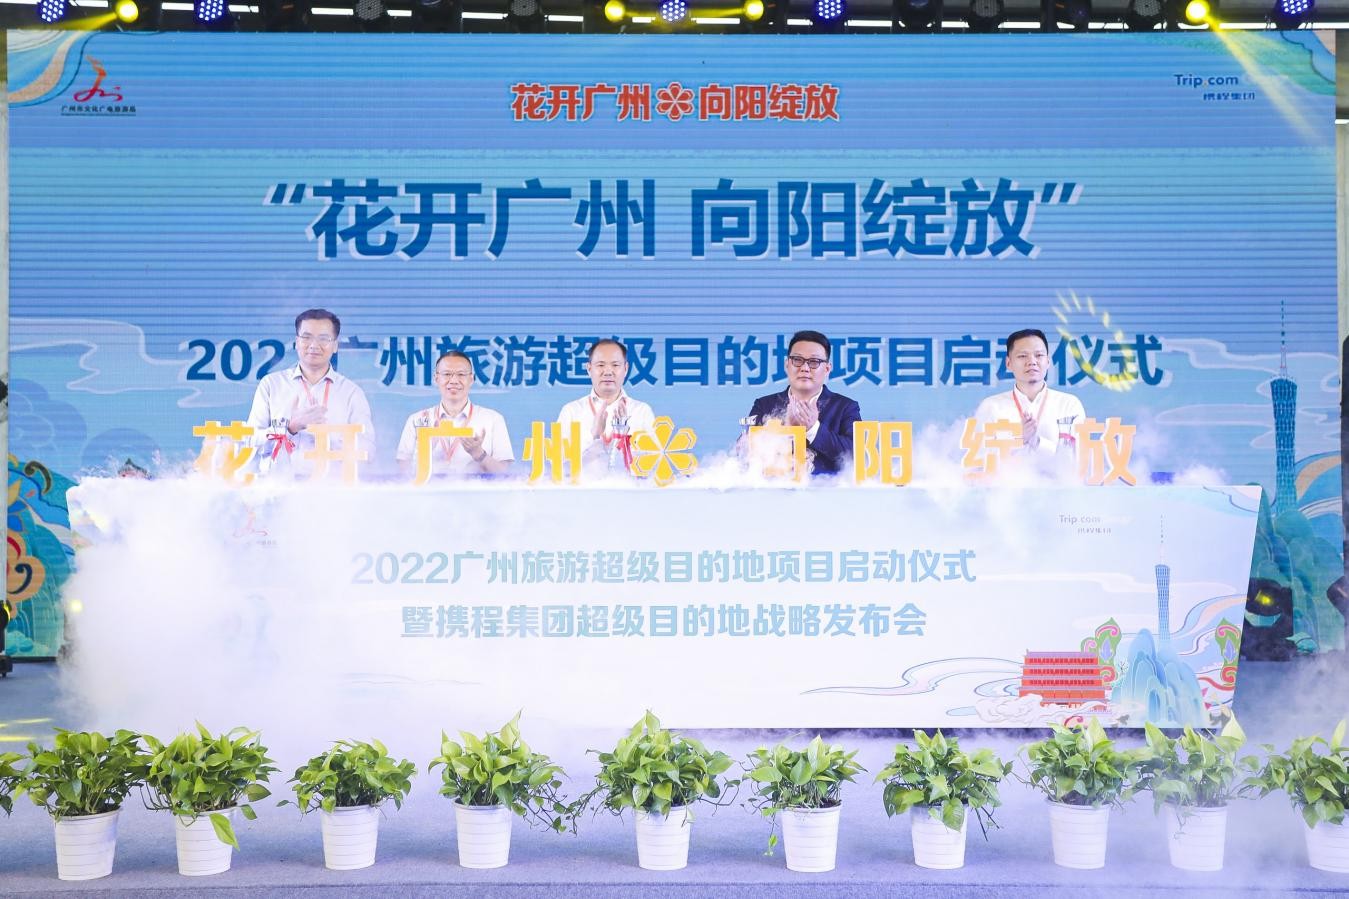 广州与携程联合启动“超级目的地”项目构筑广州文旅新引擎